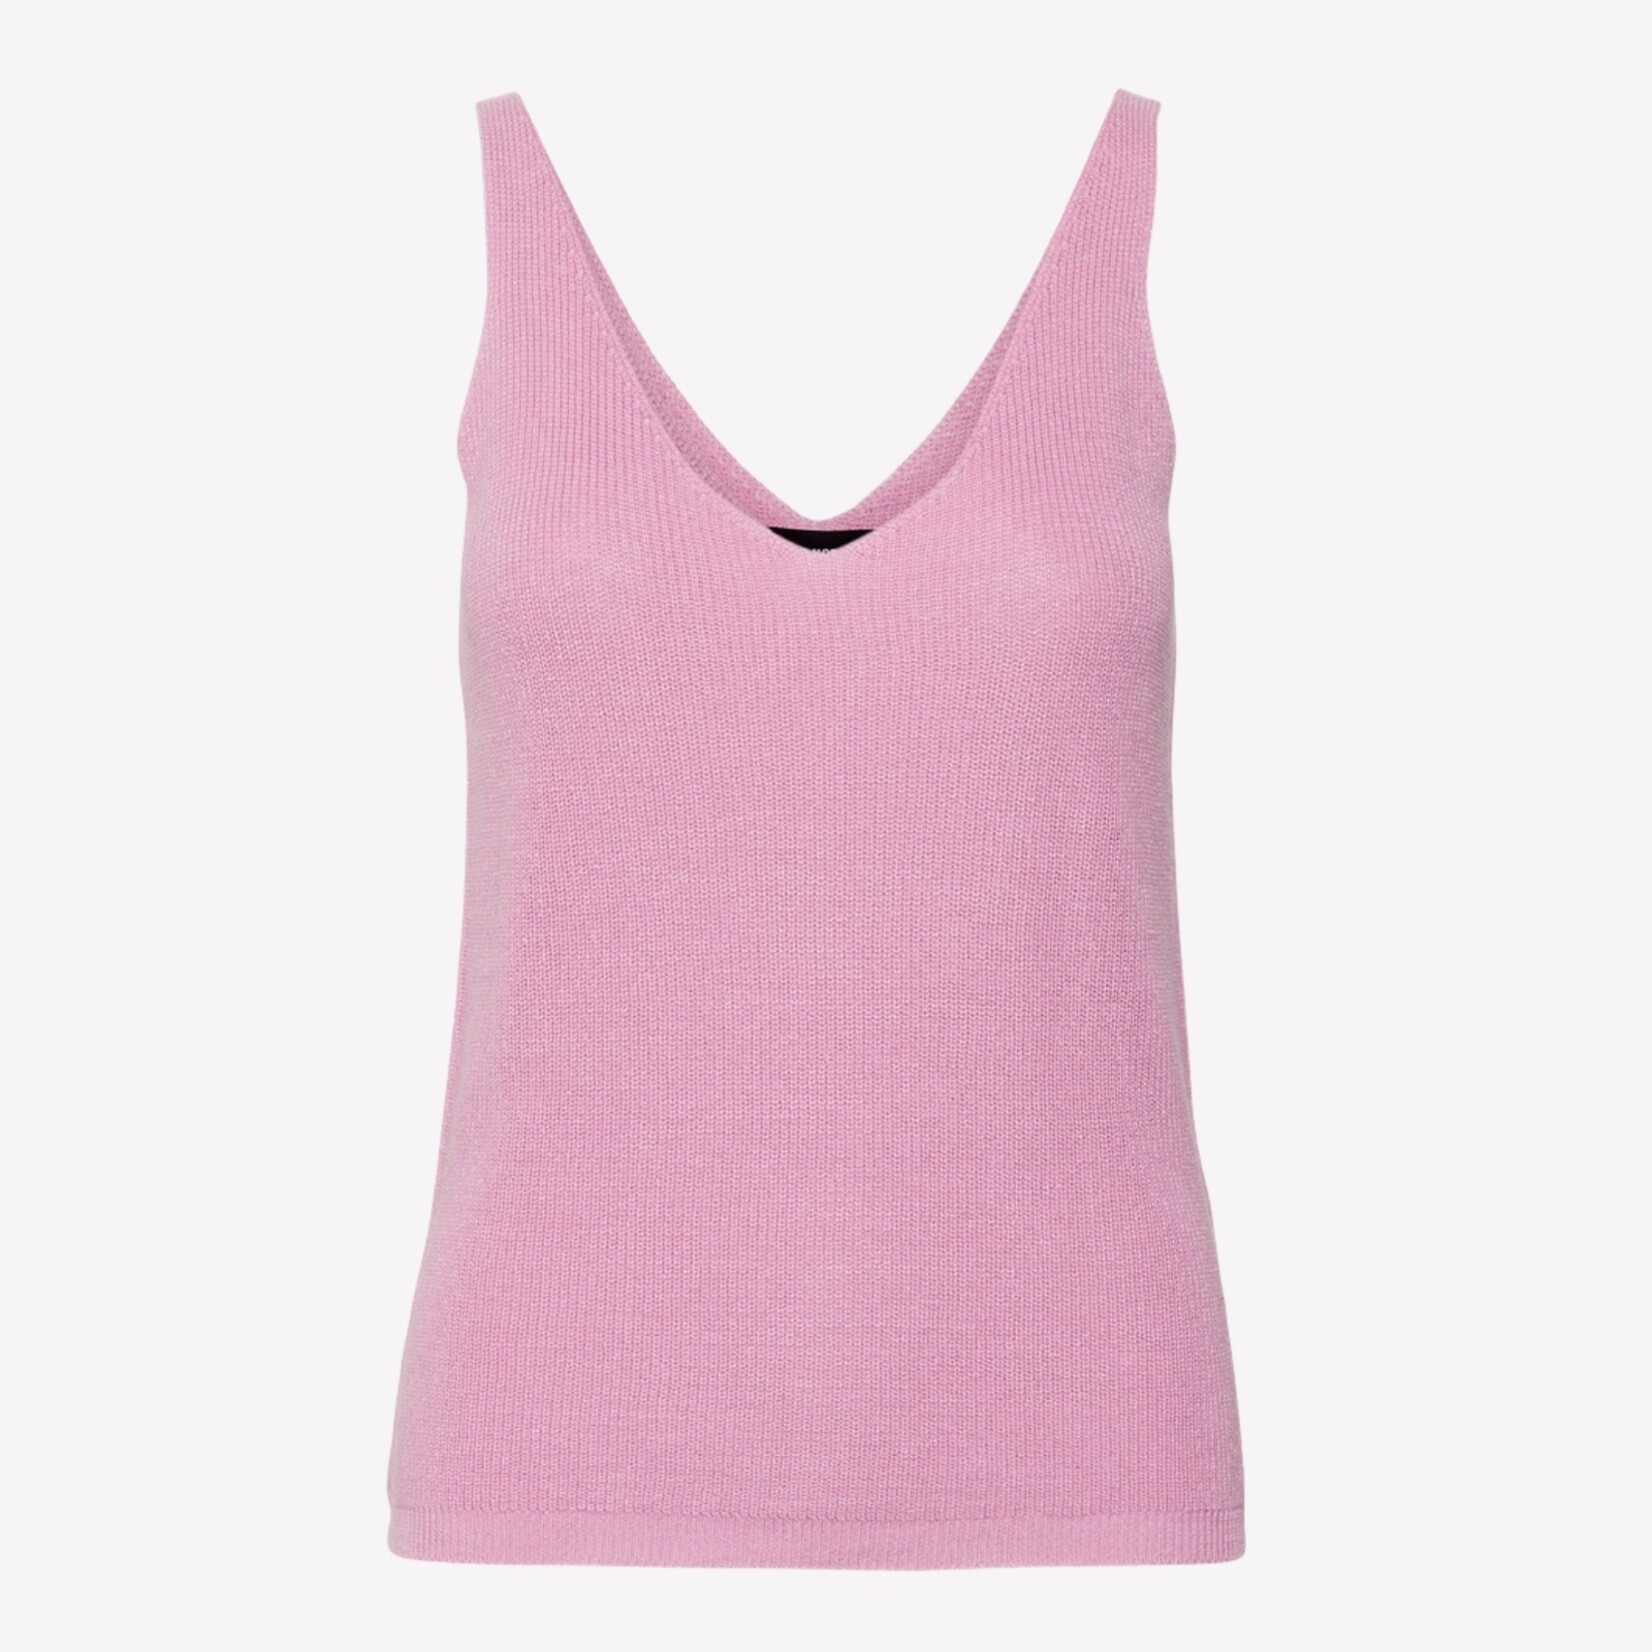 Vero Moda Lexi Knit Tank - Lavender Pink